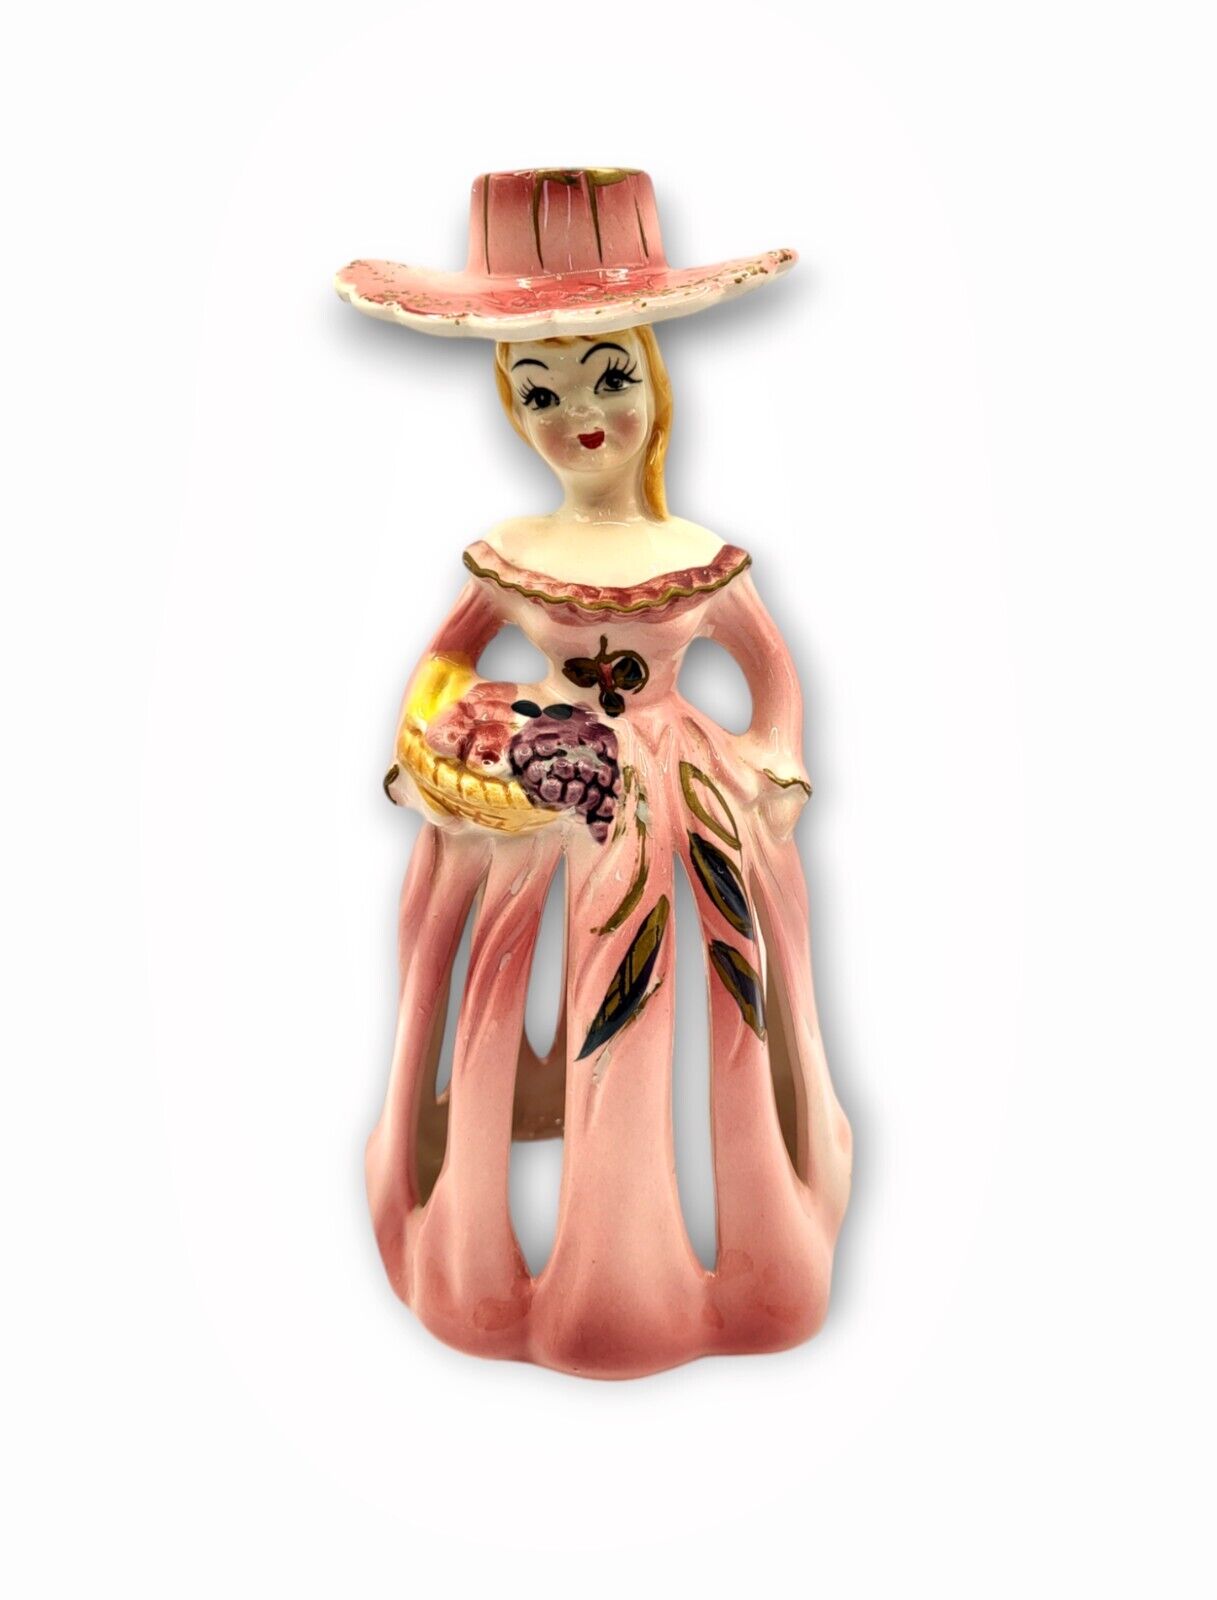 Vtg Japan Porcelain Figurine Bell Candle Napkin Holder Pink Lady 1950s Kitsch